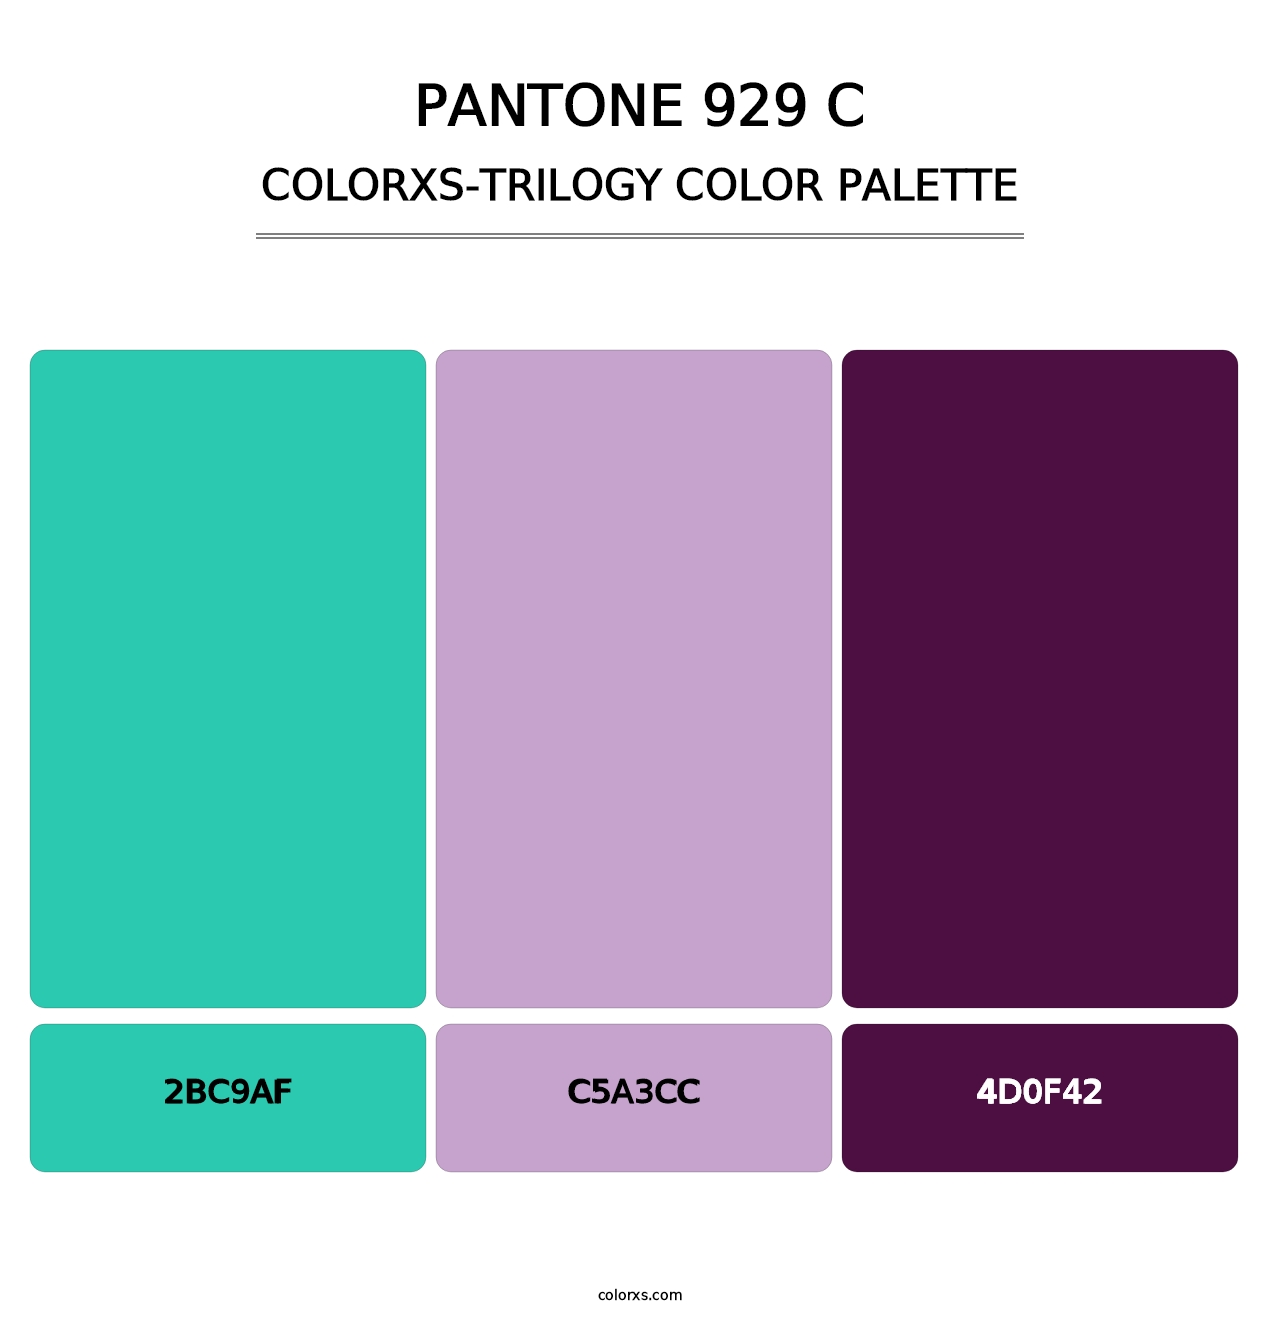 PANTONE 929 C - Colorxs Trilogy Palette